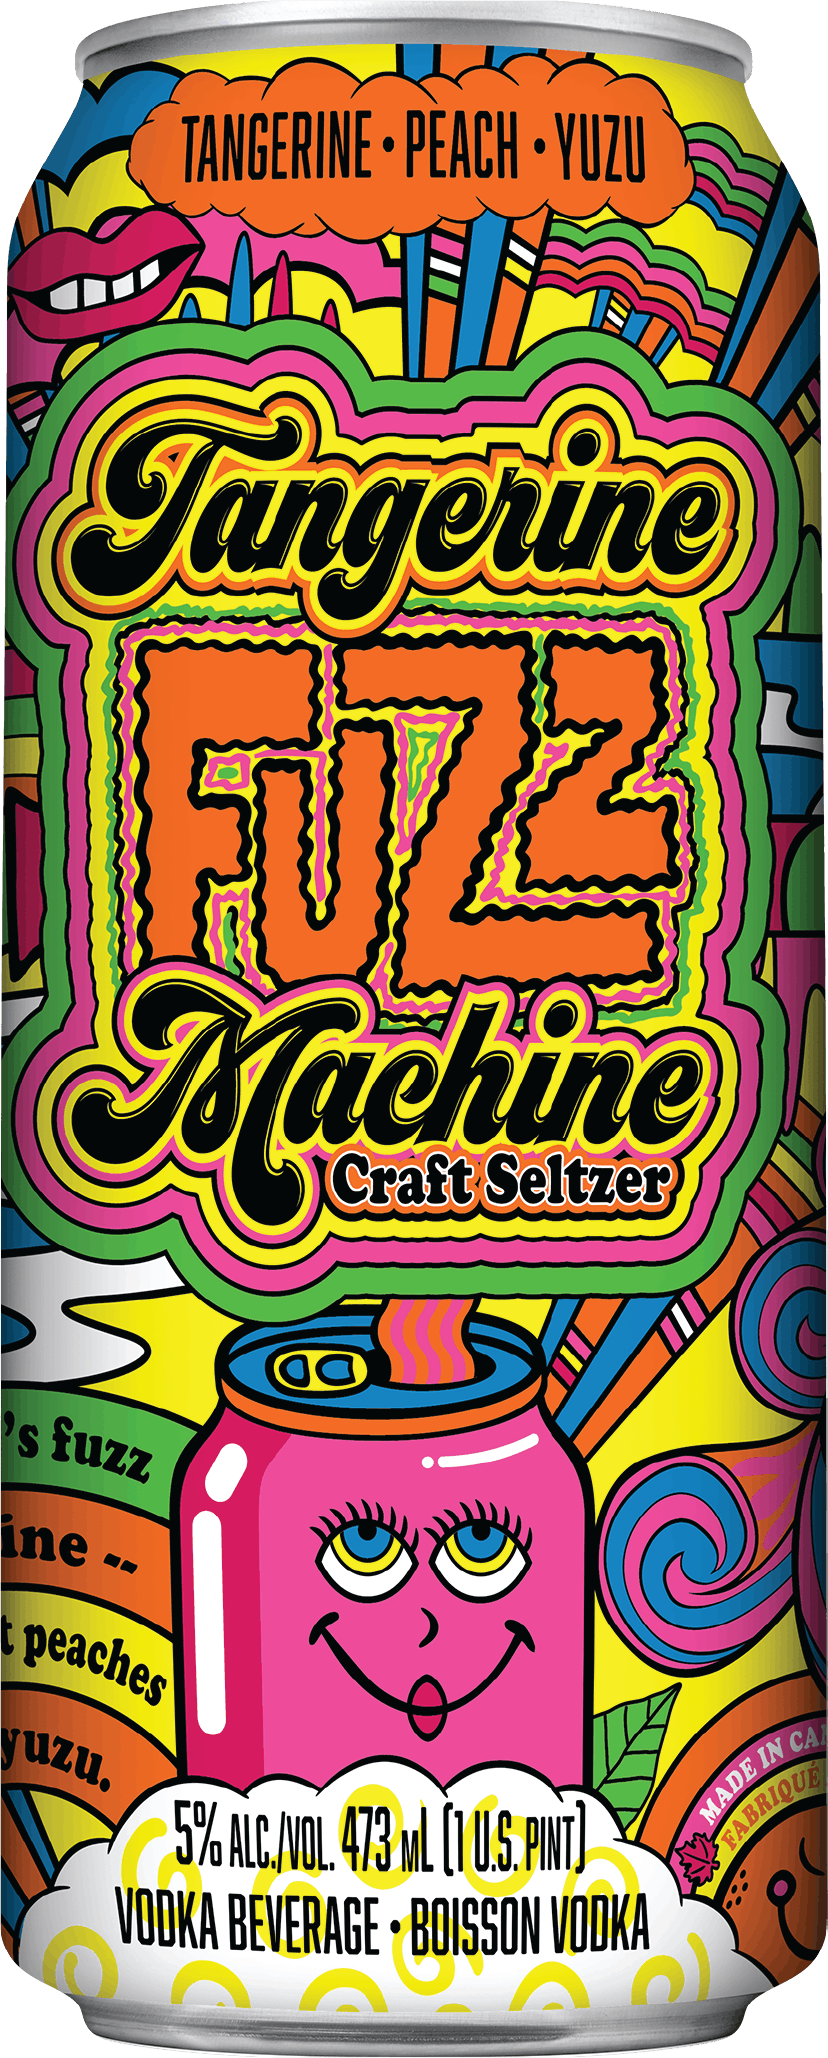 Can of Tangerine Fuzz Machine Craft Seltzer